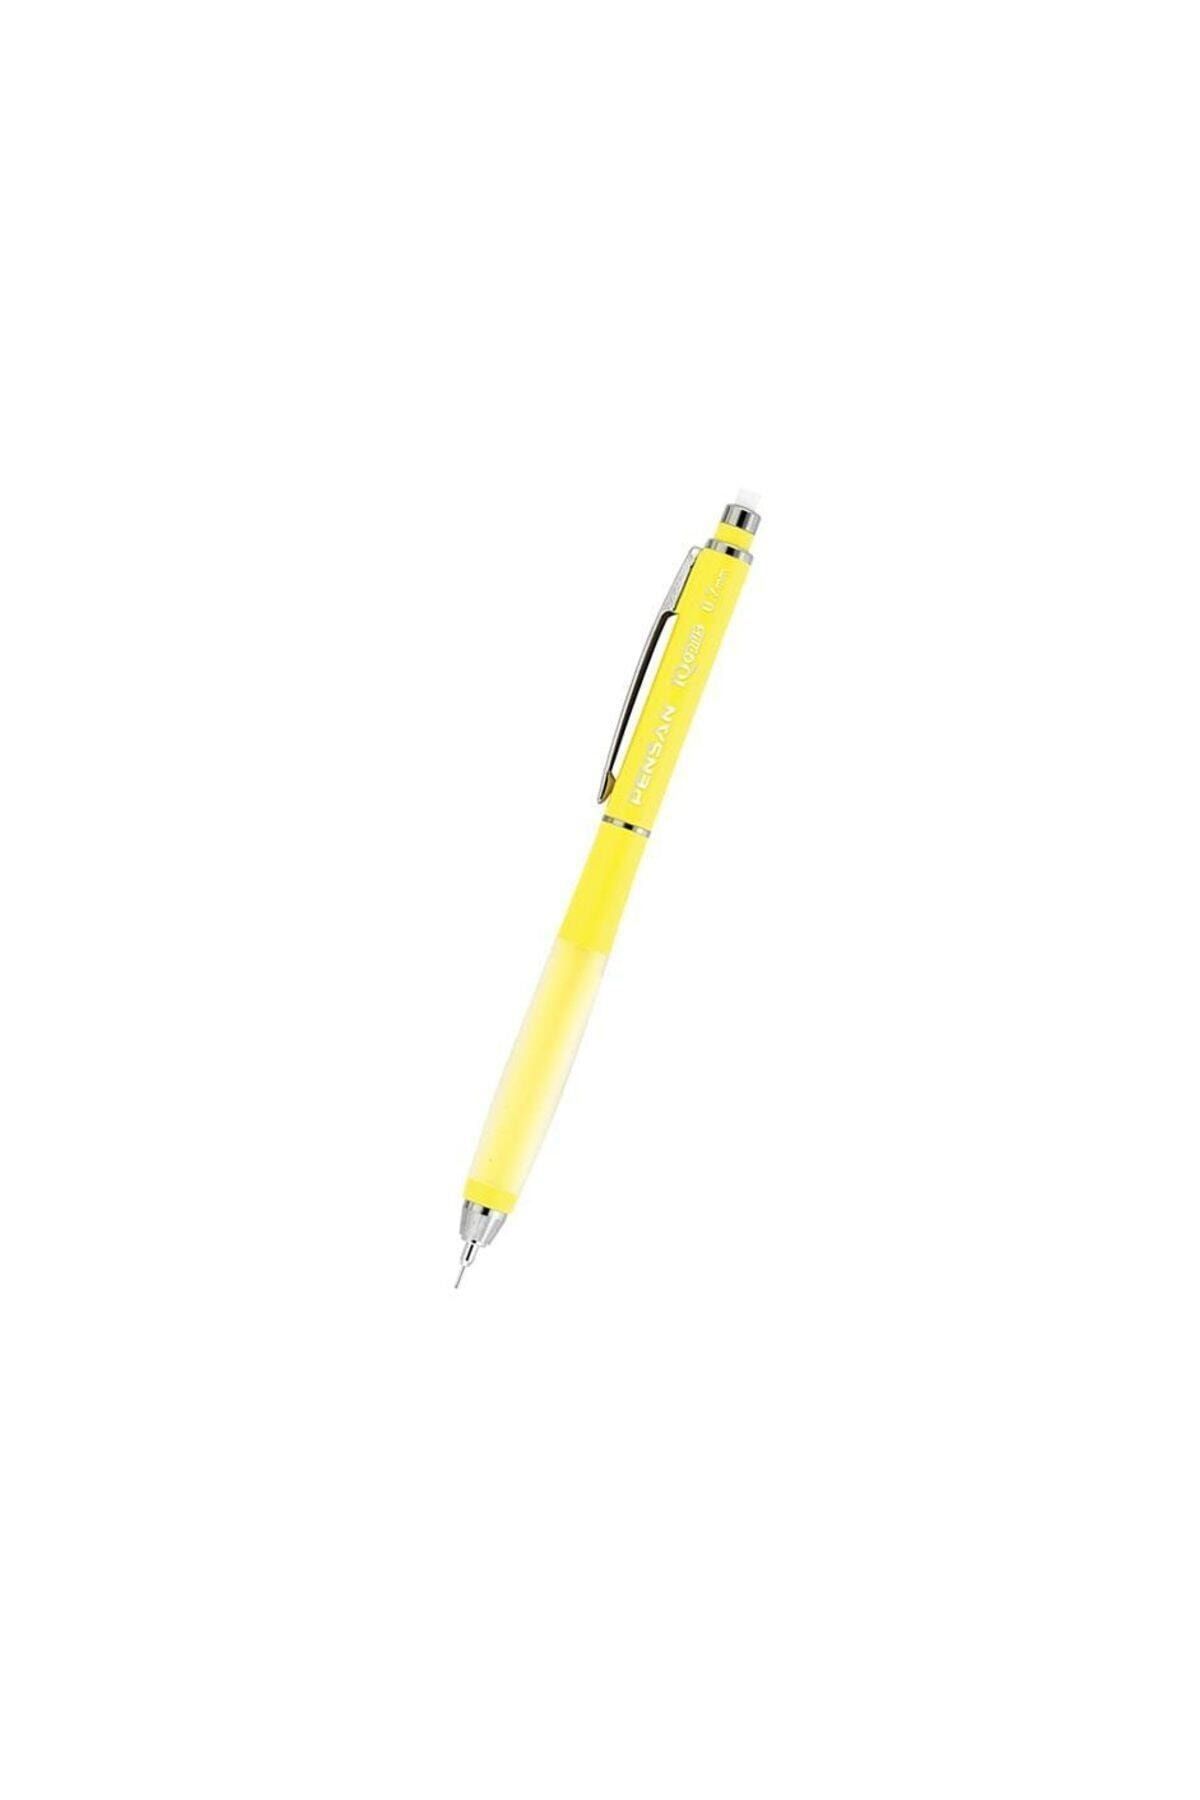 Pensan Iq Plus Versatil Kalem - 0.5 Mm Pastel Sarı Uçlu Kalem